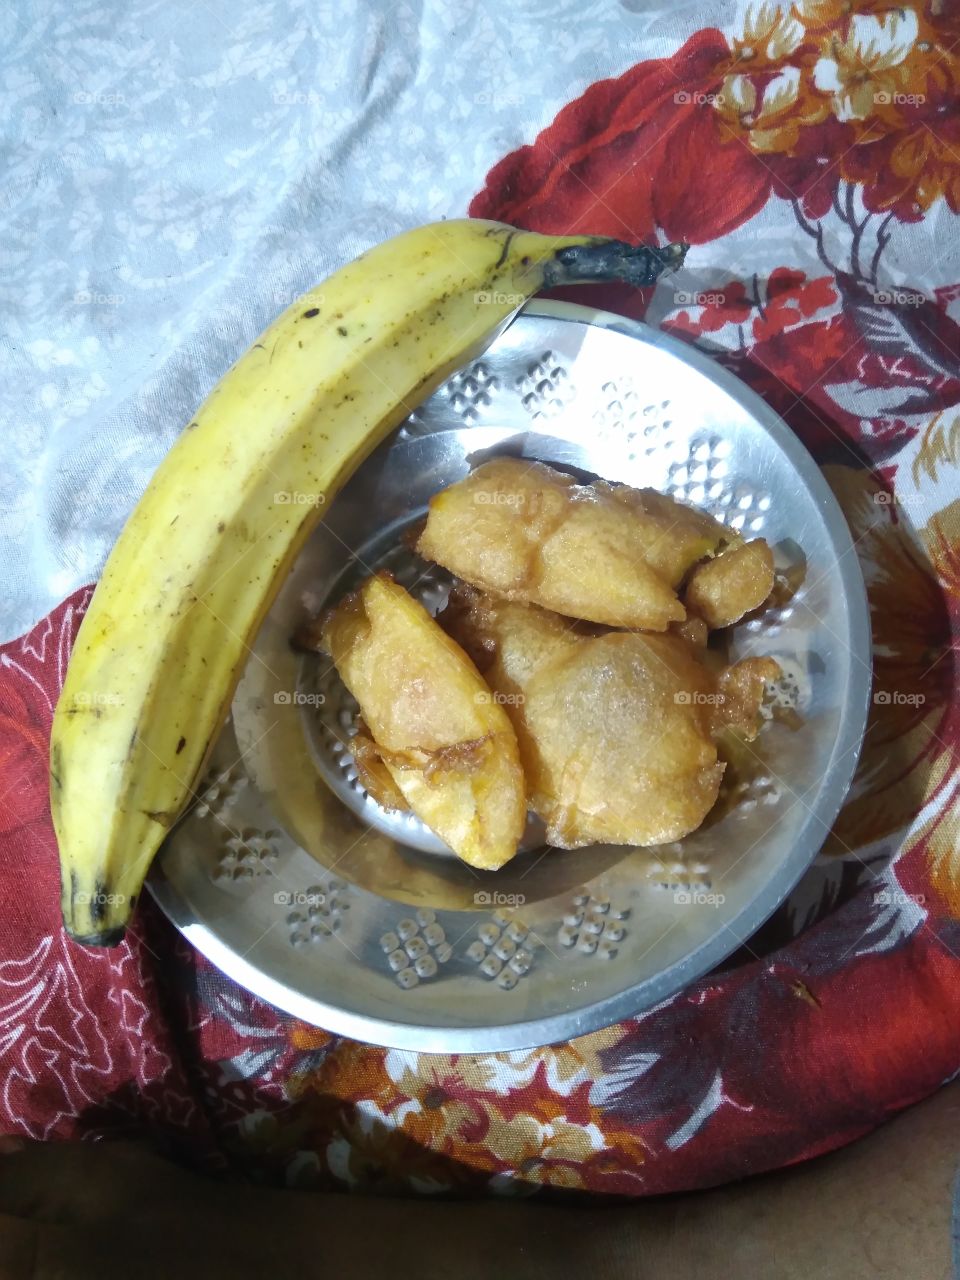 Kerala banana bajji